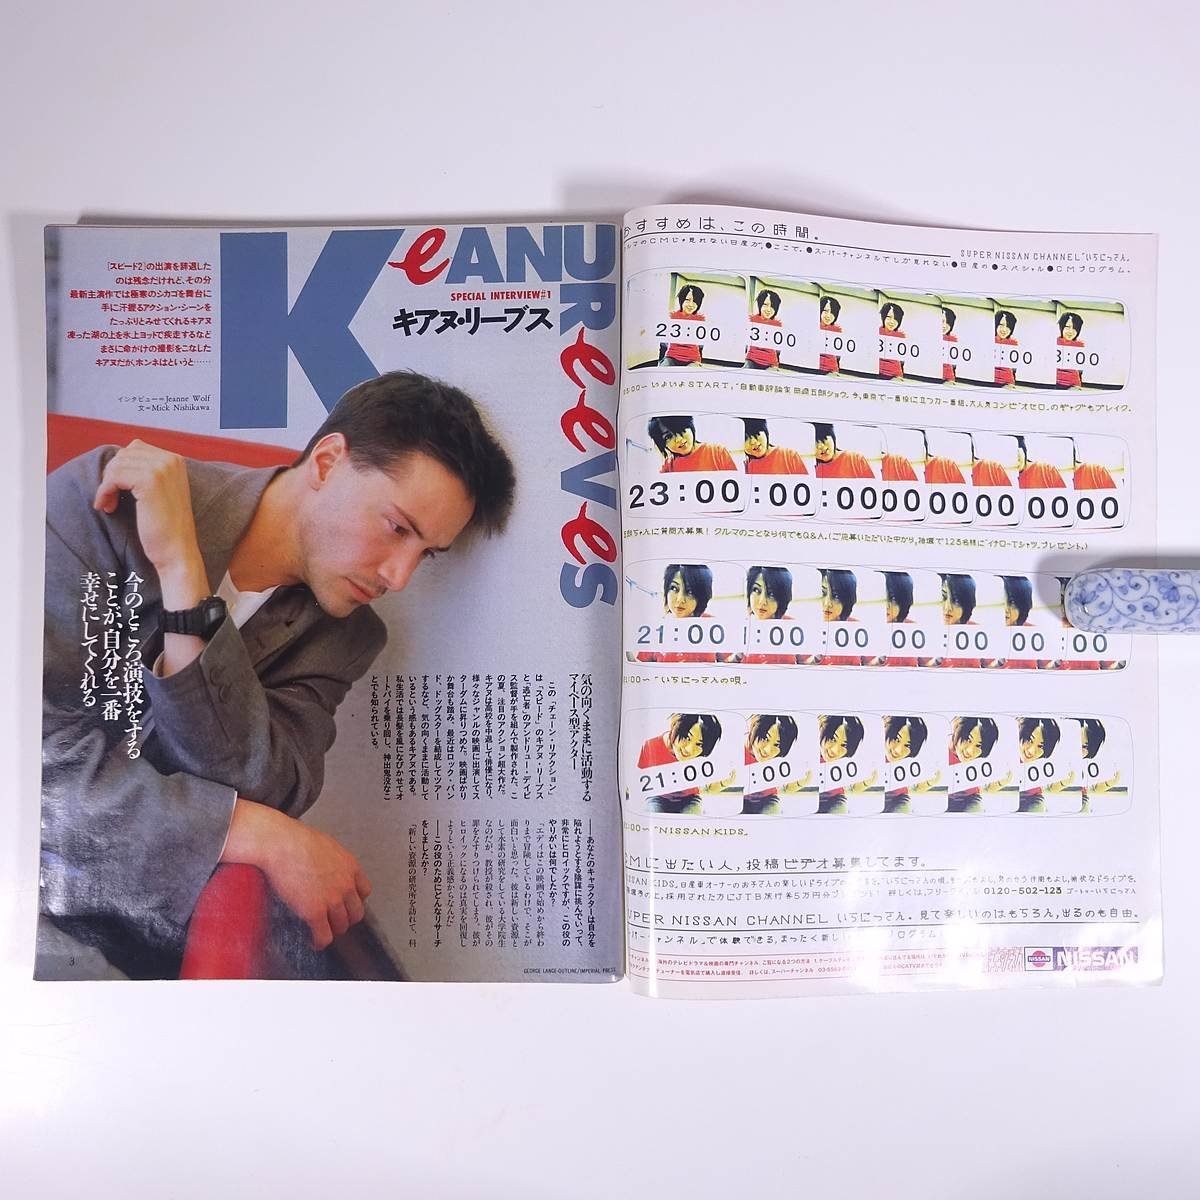  ежемесячный TV Taro телевизор Taro Kansai версия No.43 1996/9/28-10/31 Tokyo News сообщение фирма журнал телепередача гид по произведениям Kia n* Lee bs другой 